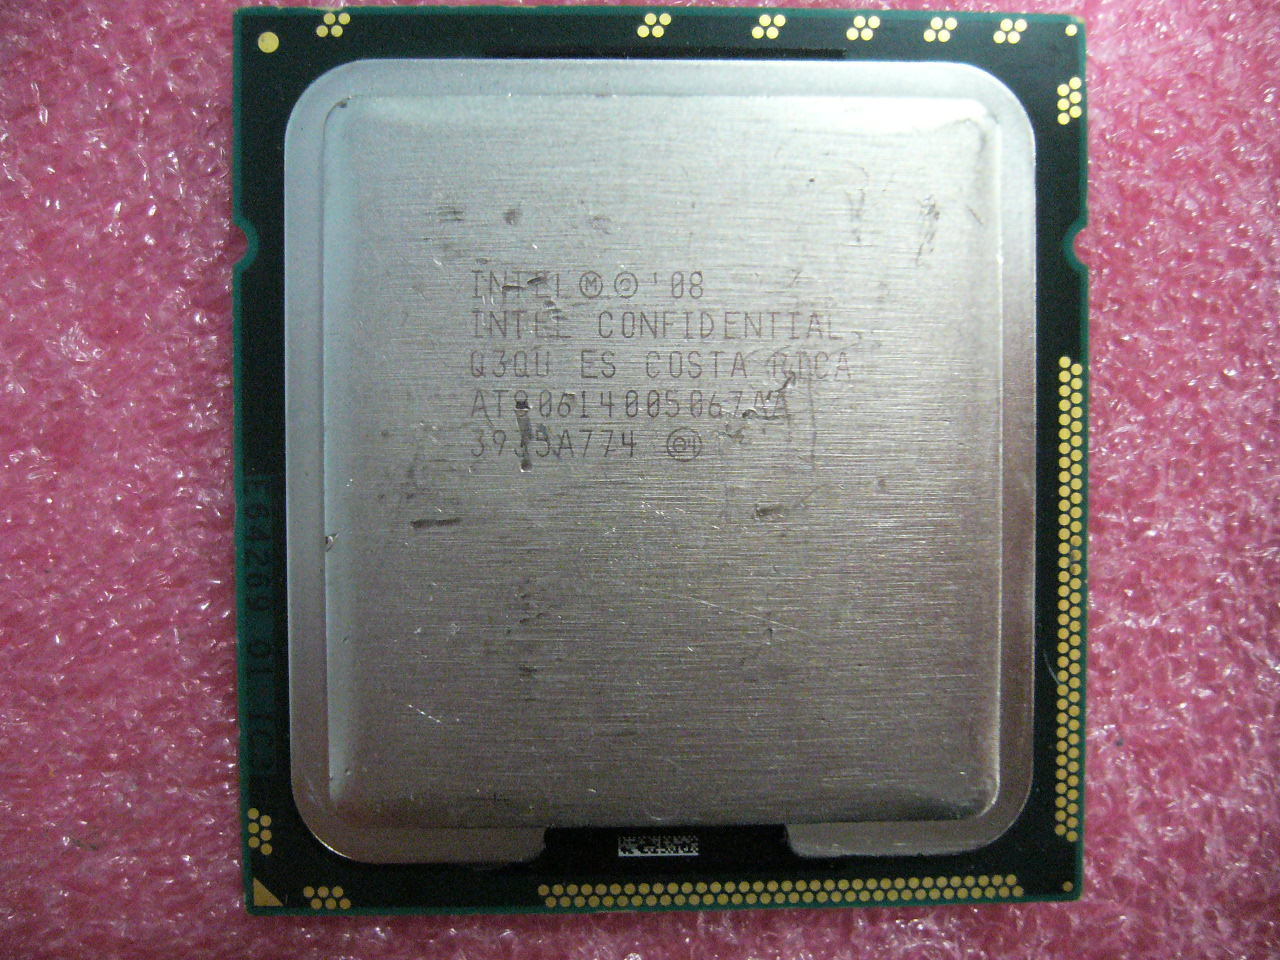 QTY 1x INTEL Quad-Cores ES CPU 2.8GHZ/12MB LGA1366 Q3QU A0 TDP 95W - Click Image to Close